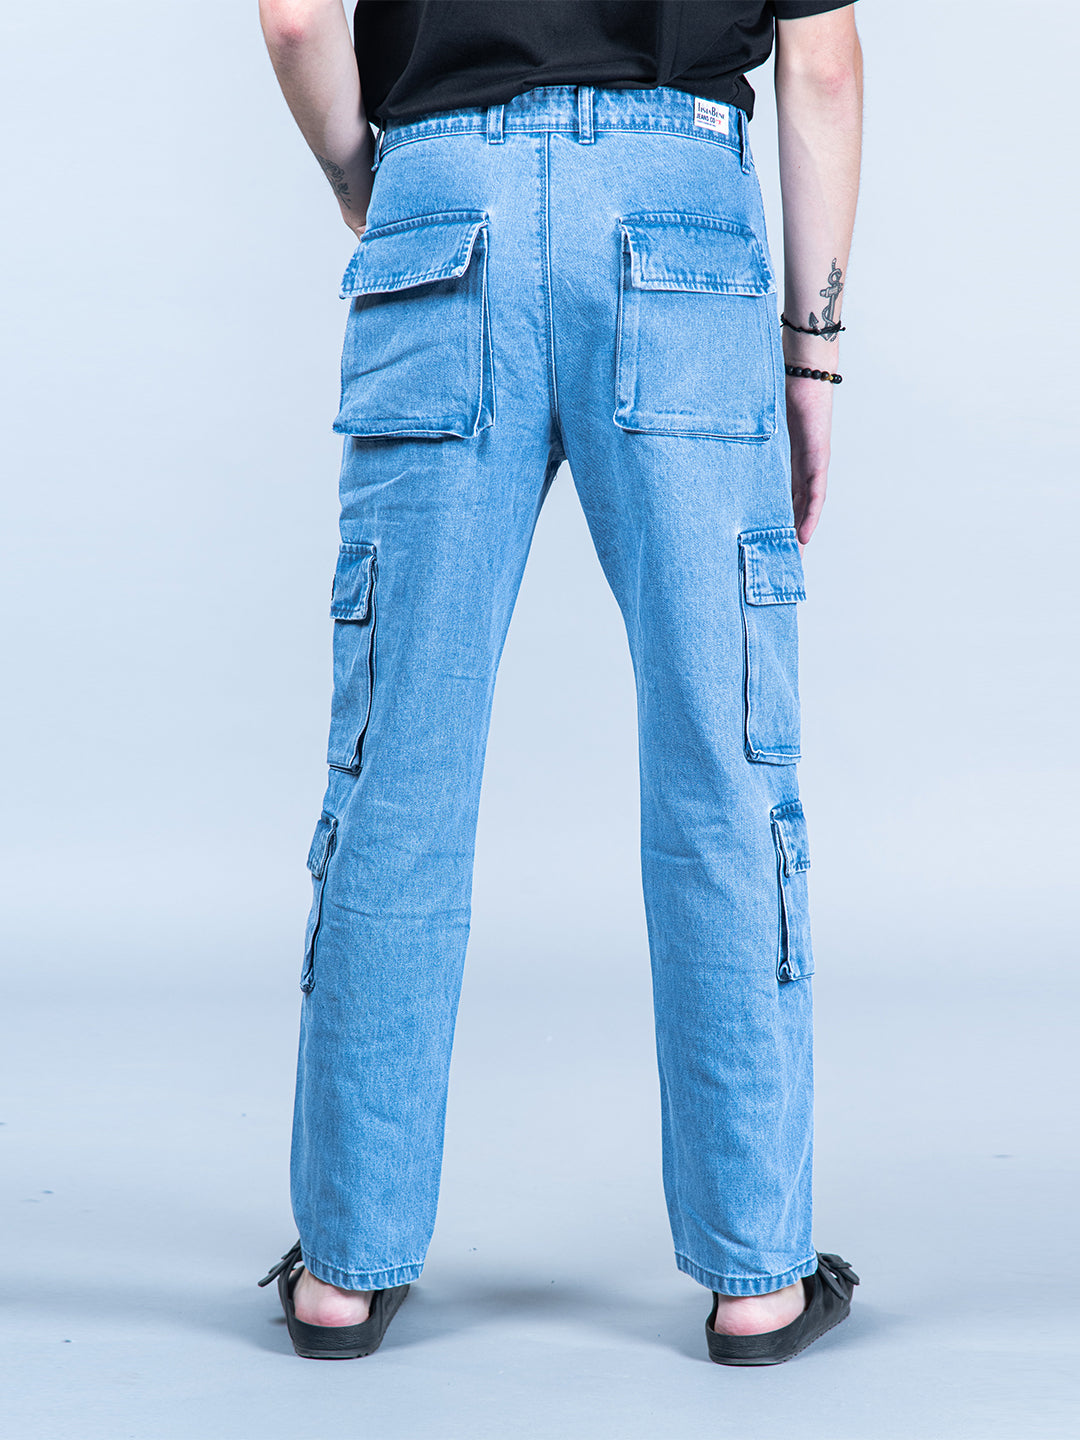 Jeans Men Pants Casual Cotton Denim Trousers Multi Pocket Cargo Jeans Men  New Fashion Denim Pencil